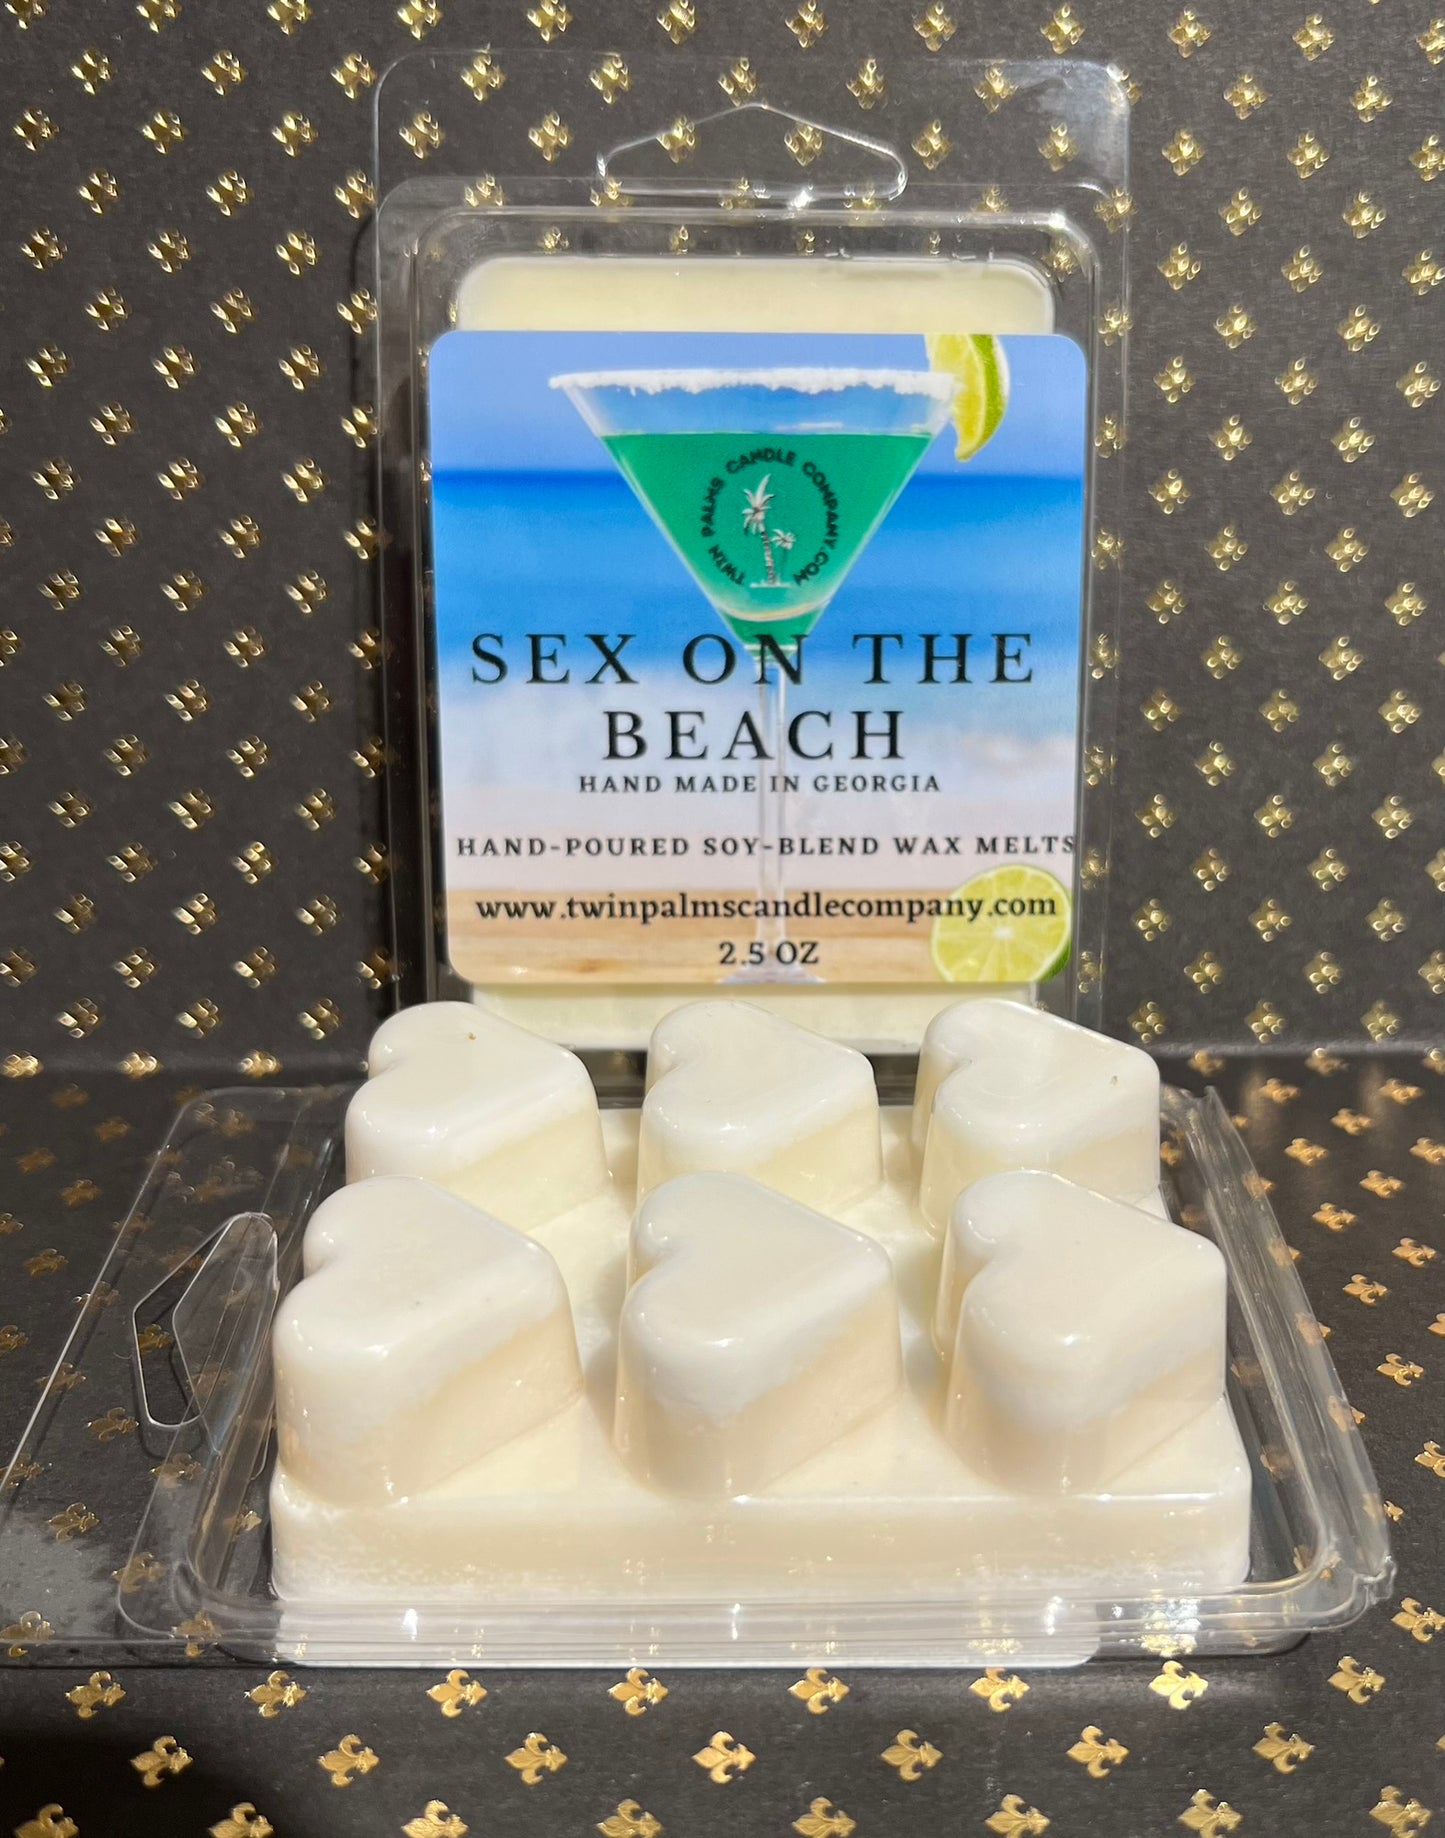 SEX ON THE BEACH WAX MELTS